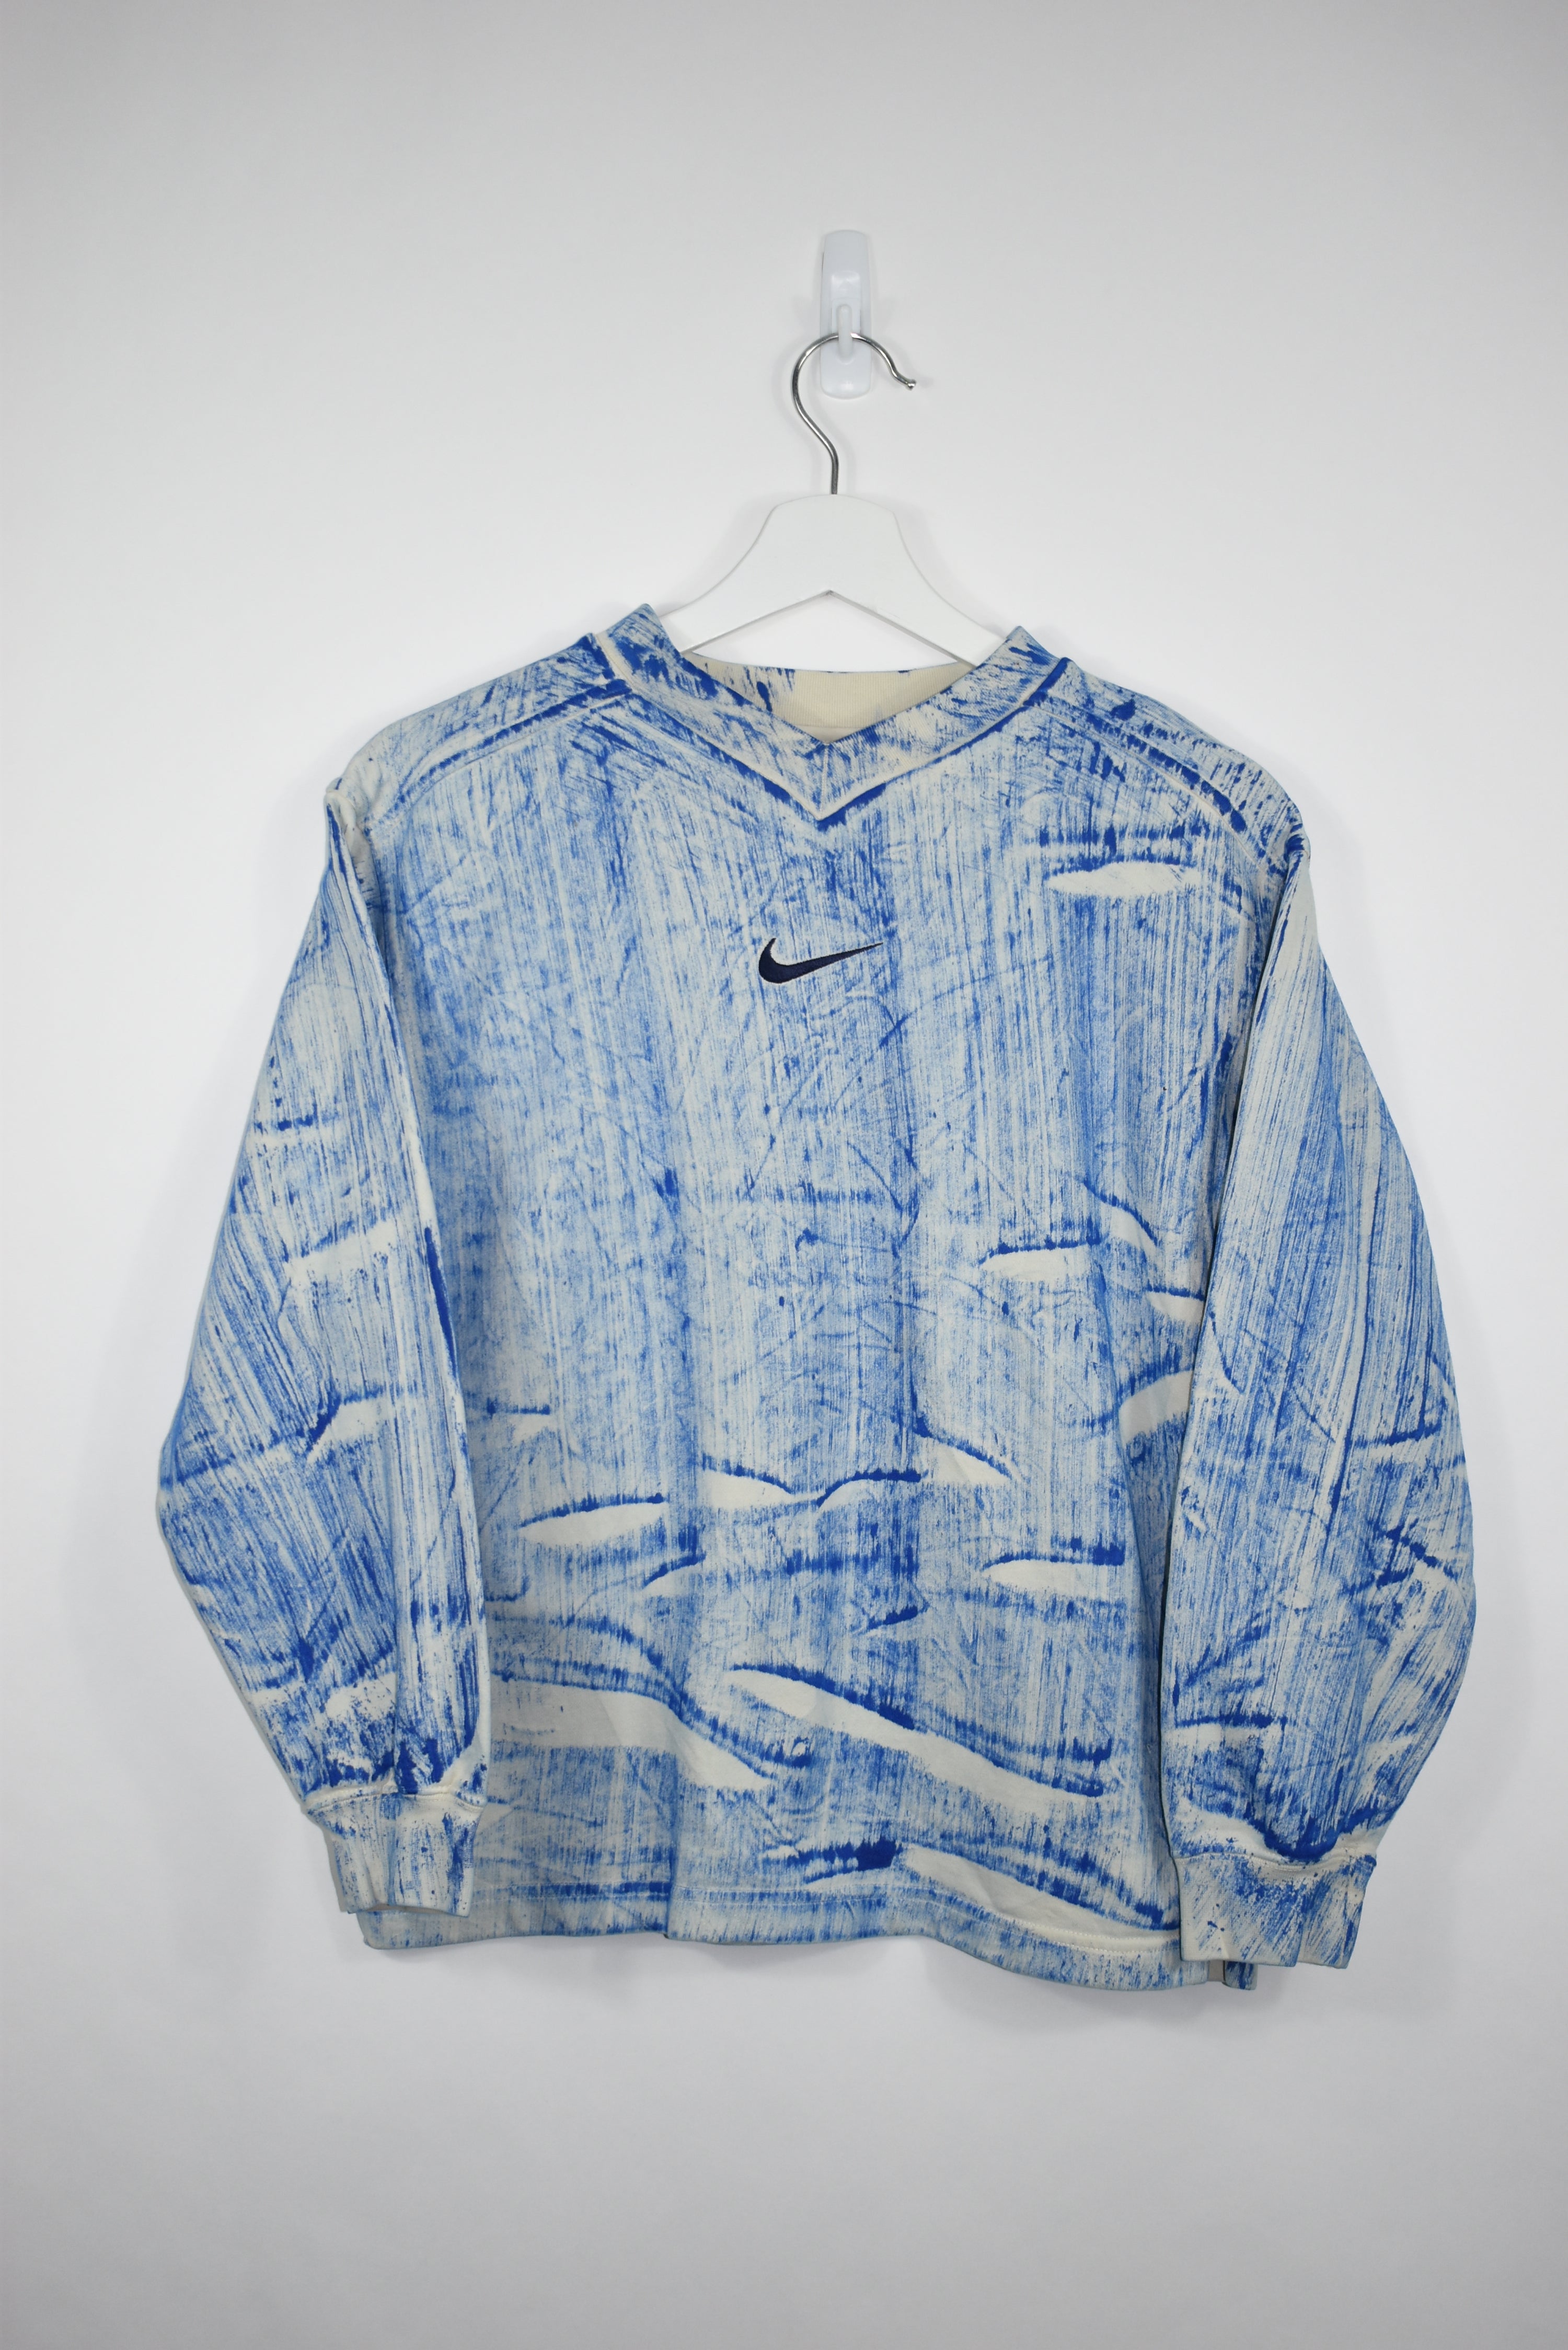 Vintage Nike Embroidery Patterned Sweatshirt S - REVIVED Vintage est. 2020